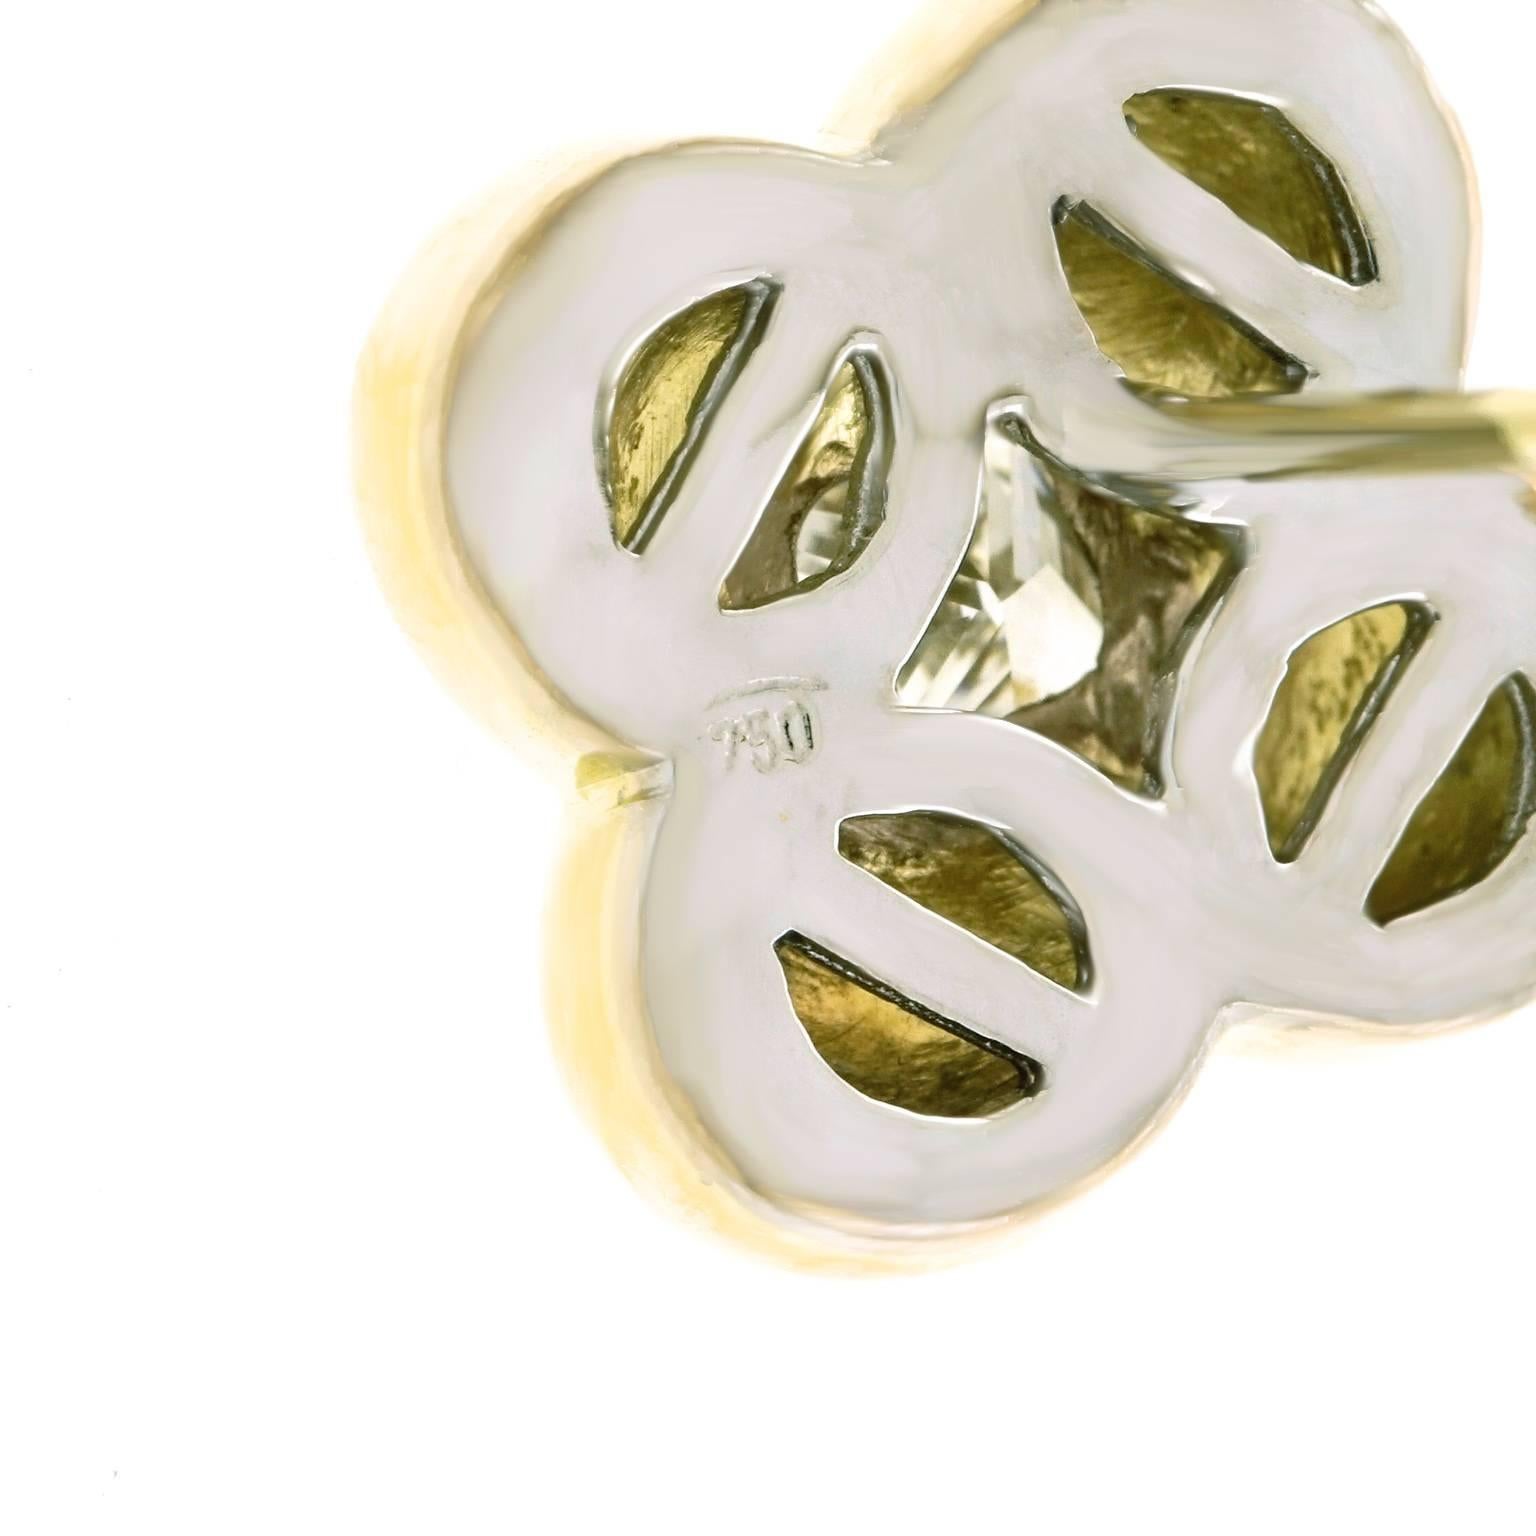 Stunning Clover-Cut Diamonds in Gold Clover Motif Earrings 1